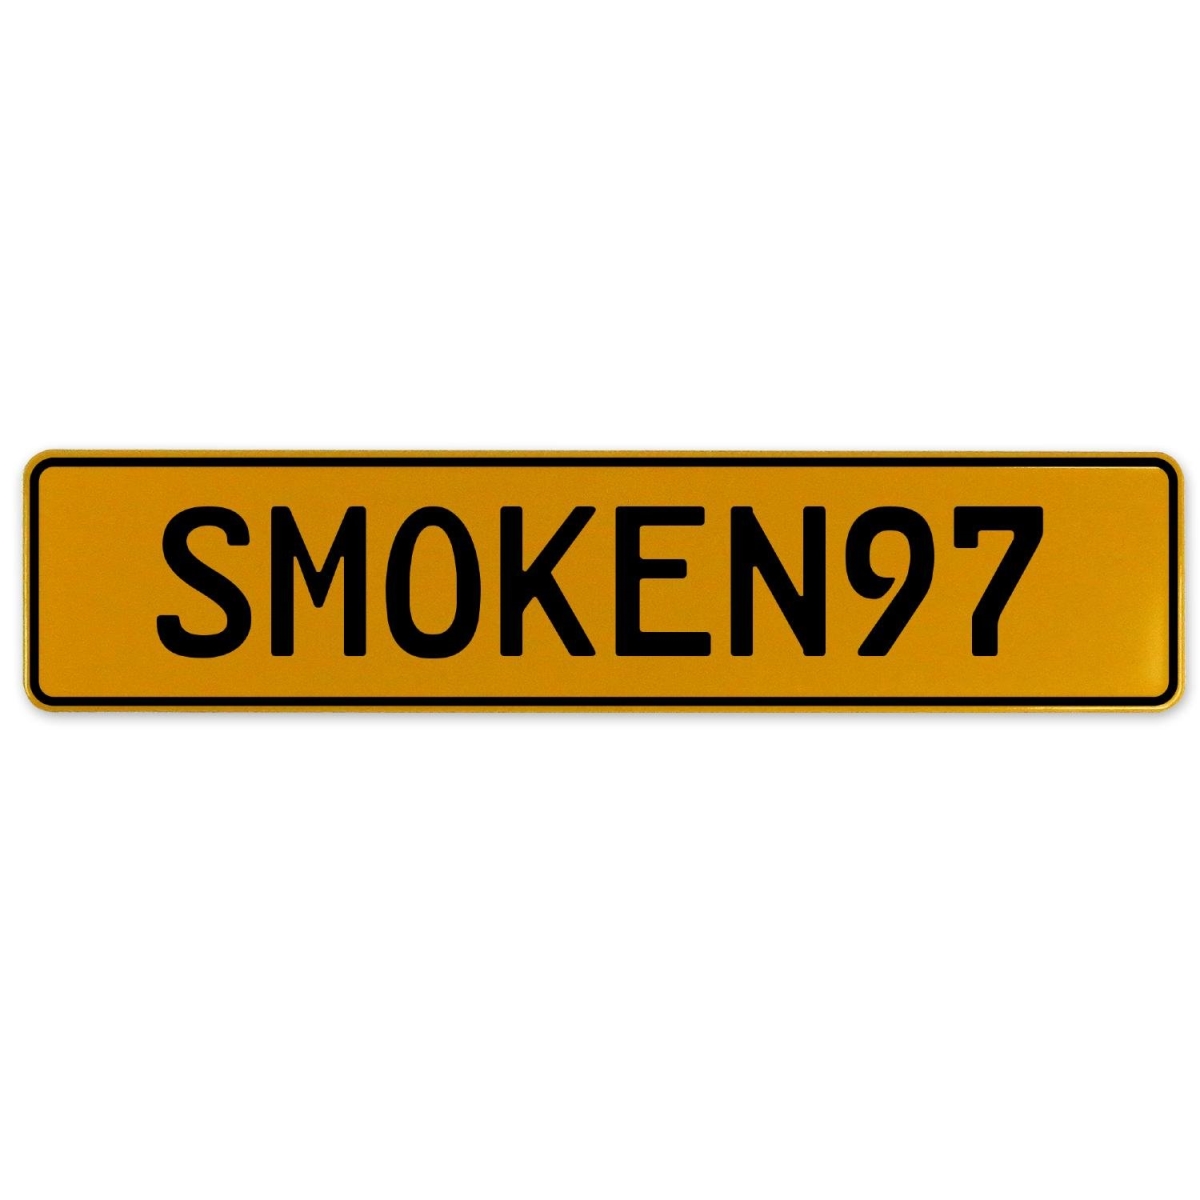 Smoken97 - Yellow Aluminum Street Sign Mancave Euro Plate Name Door Sign Wall